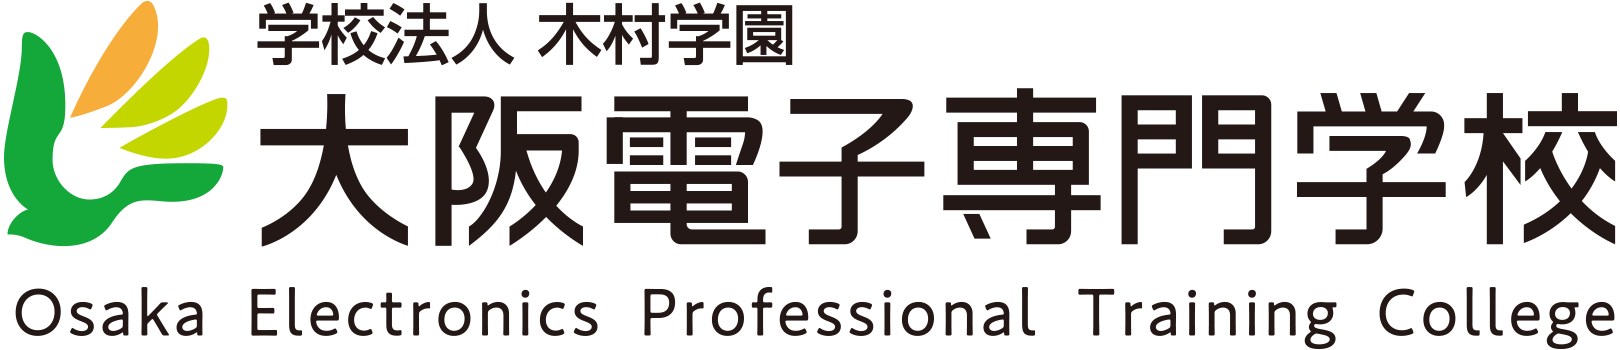 学校法人 木村学園 大阪電子専門学校 Osaka Electronics Professional Training College